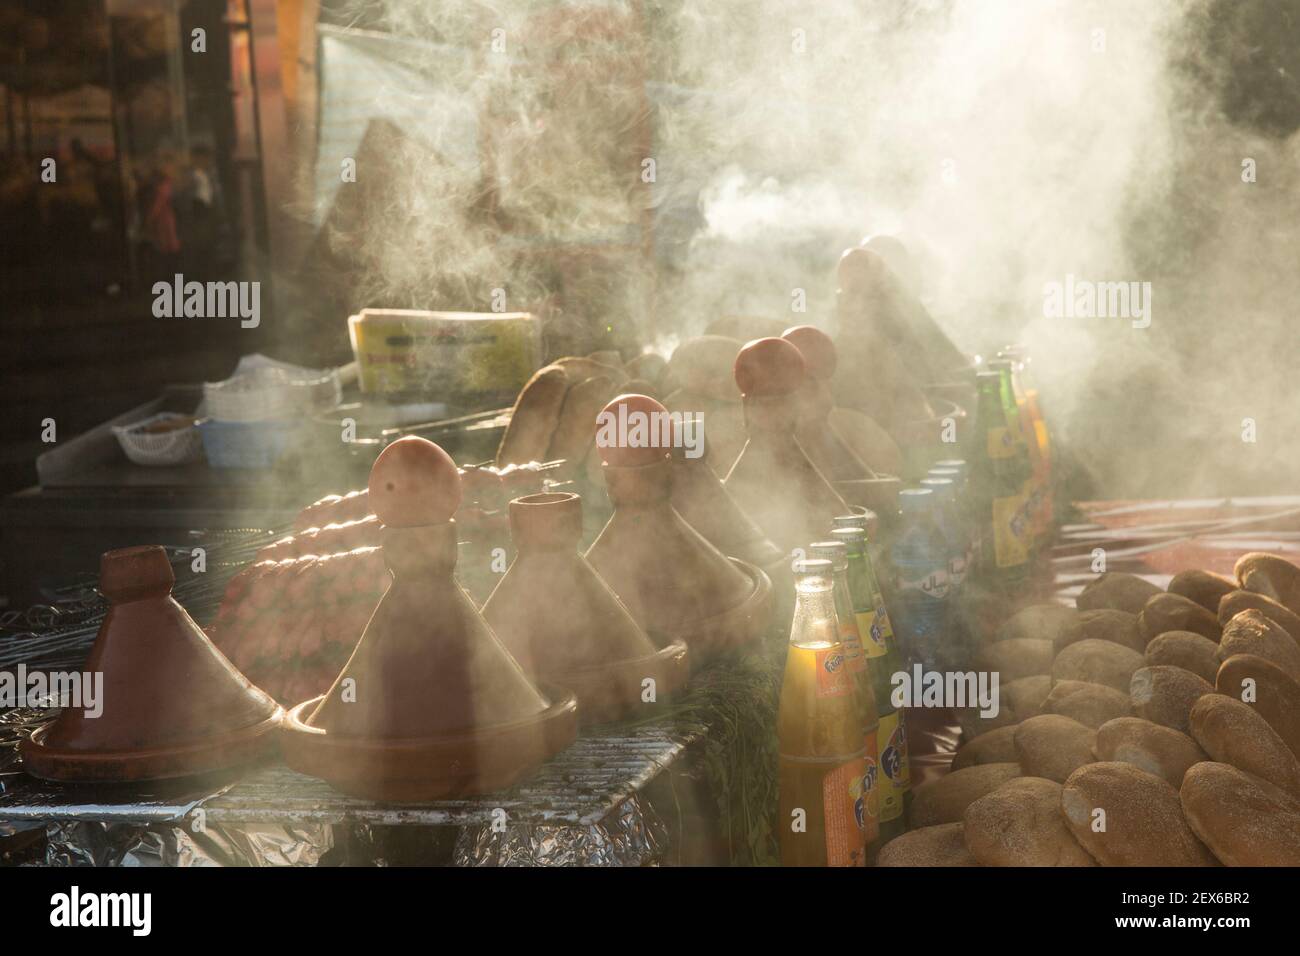 Marruecos, Meknes, ollas de cocina de tagine Foto de stock